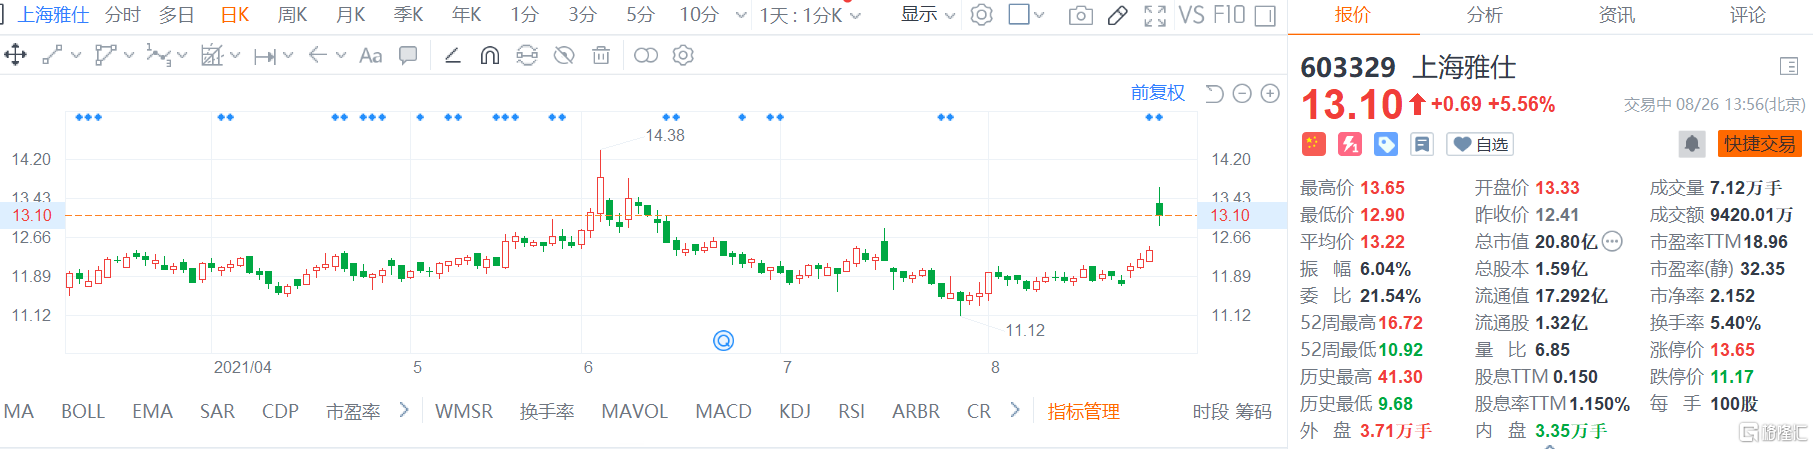 上海雅仕(603329.SH)涨5.5% 最新总市值20.8亿